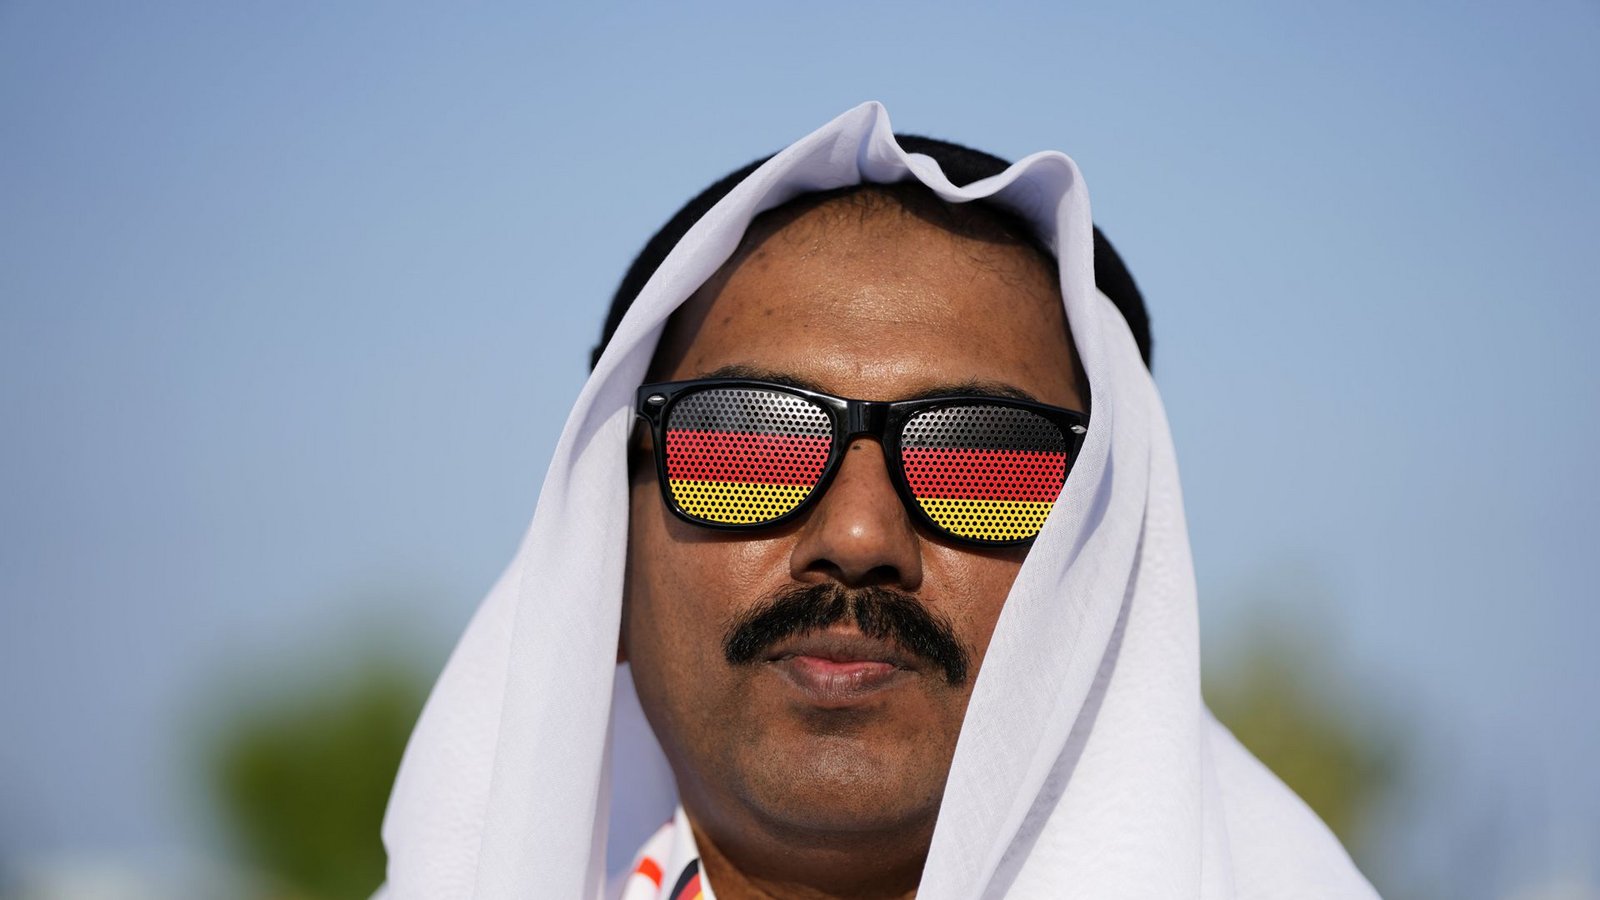 Ein angeblicher Deutschland-Fan aus Katar soll für gute Laune sorgen: Wie gut ist die Stimmung wirklich?Foto: dpa/Hassan Ammar